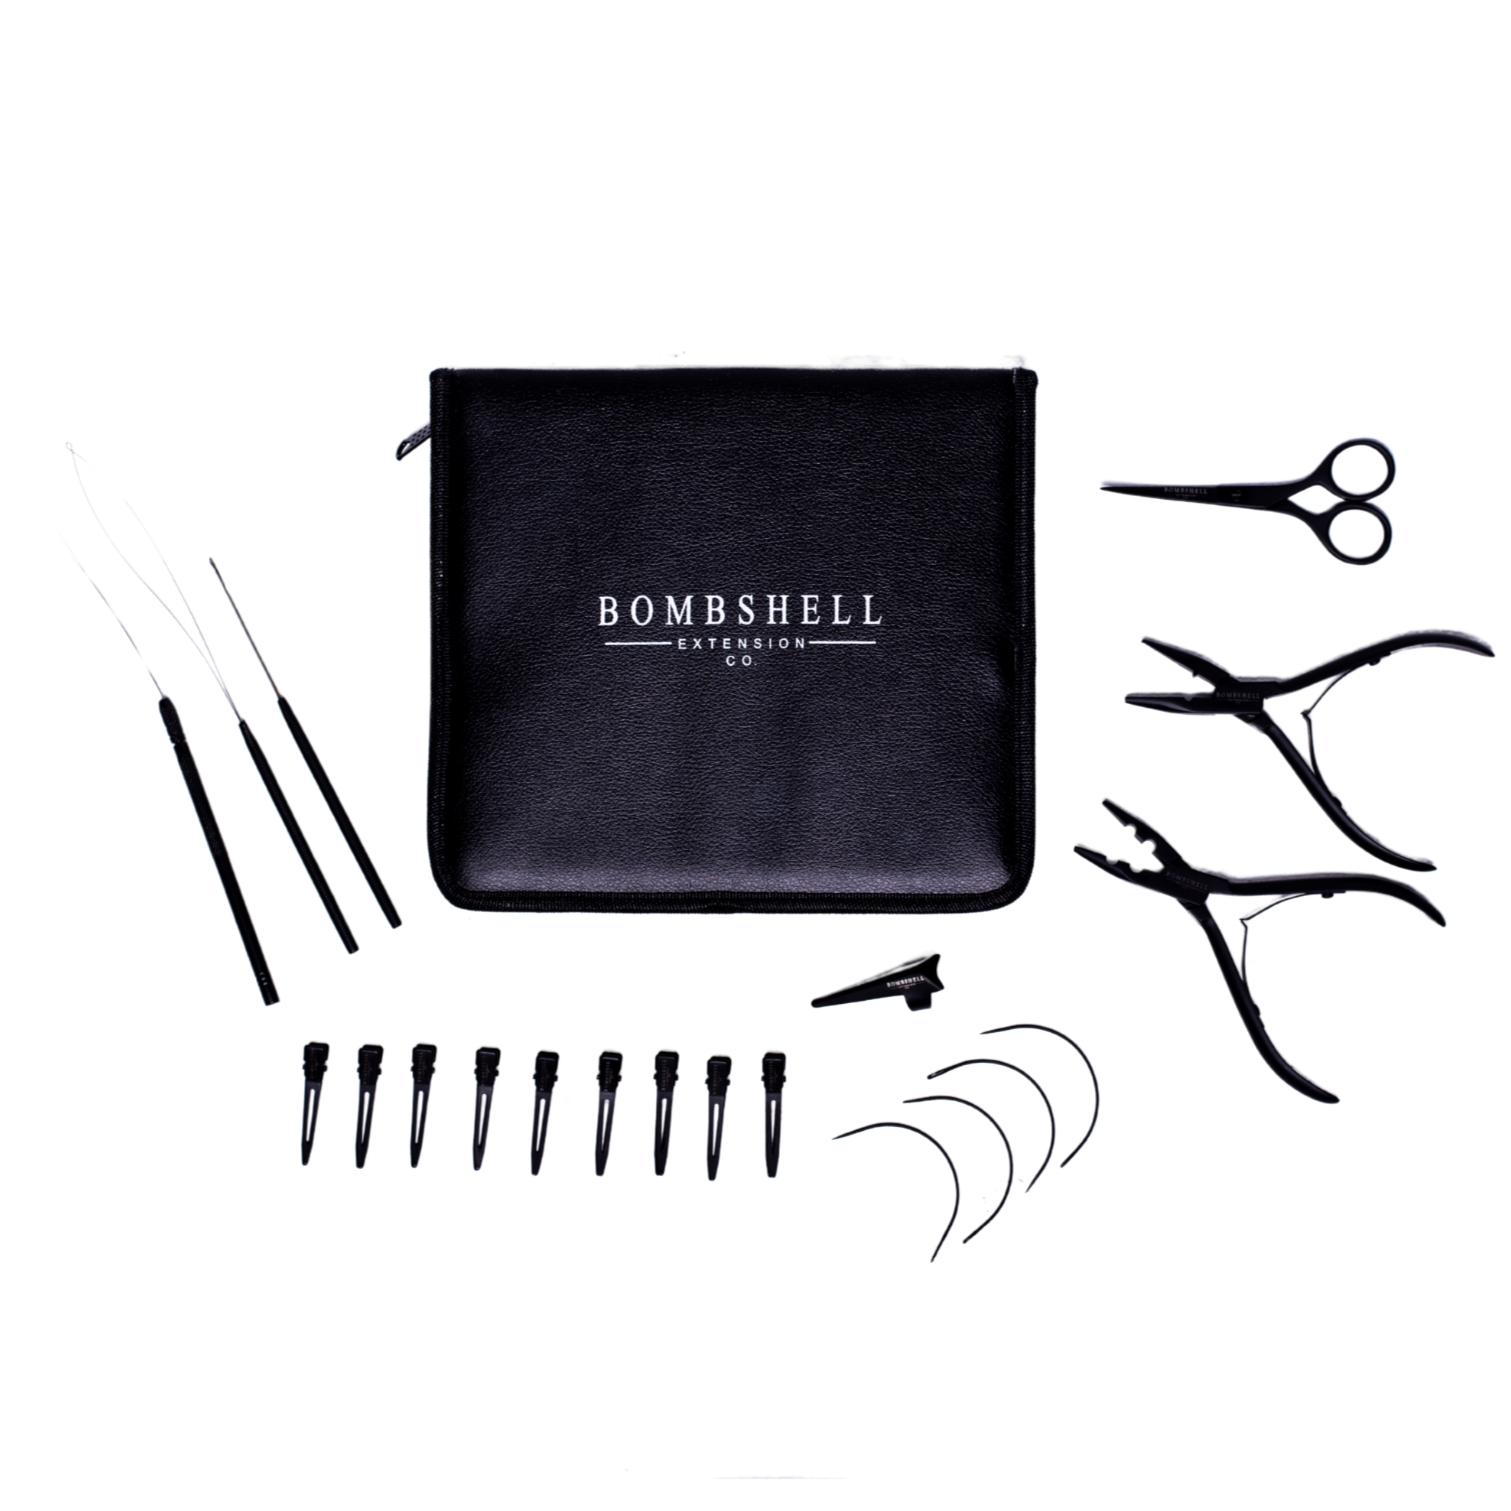 Bombshell Kit – Bombshell Extension Co.